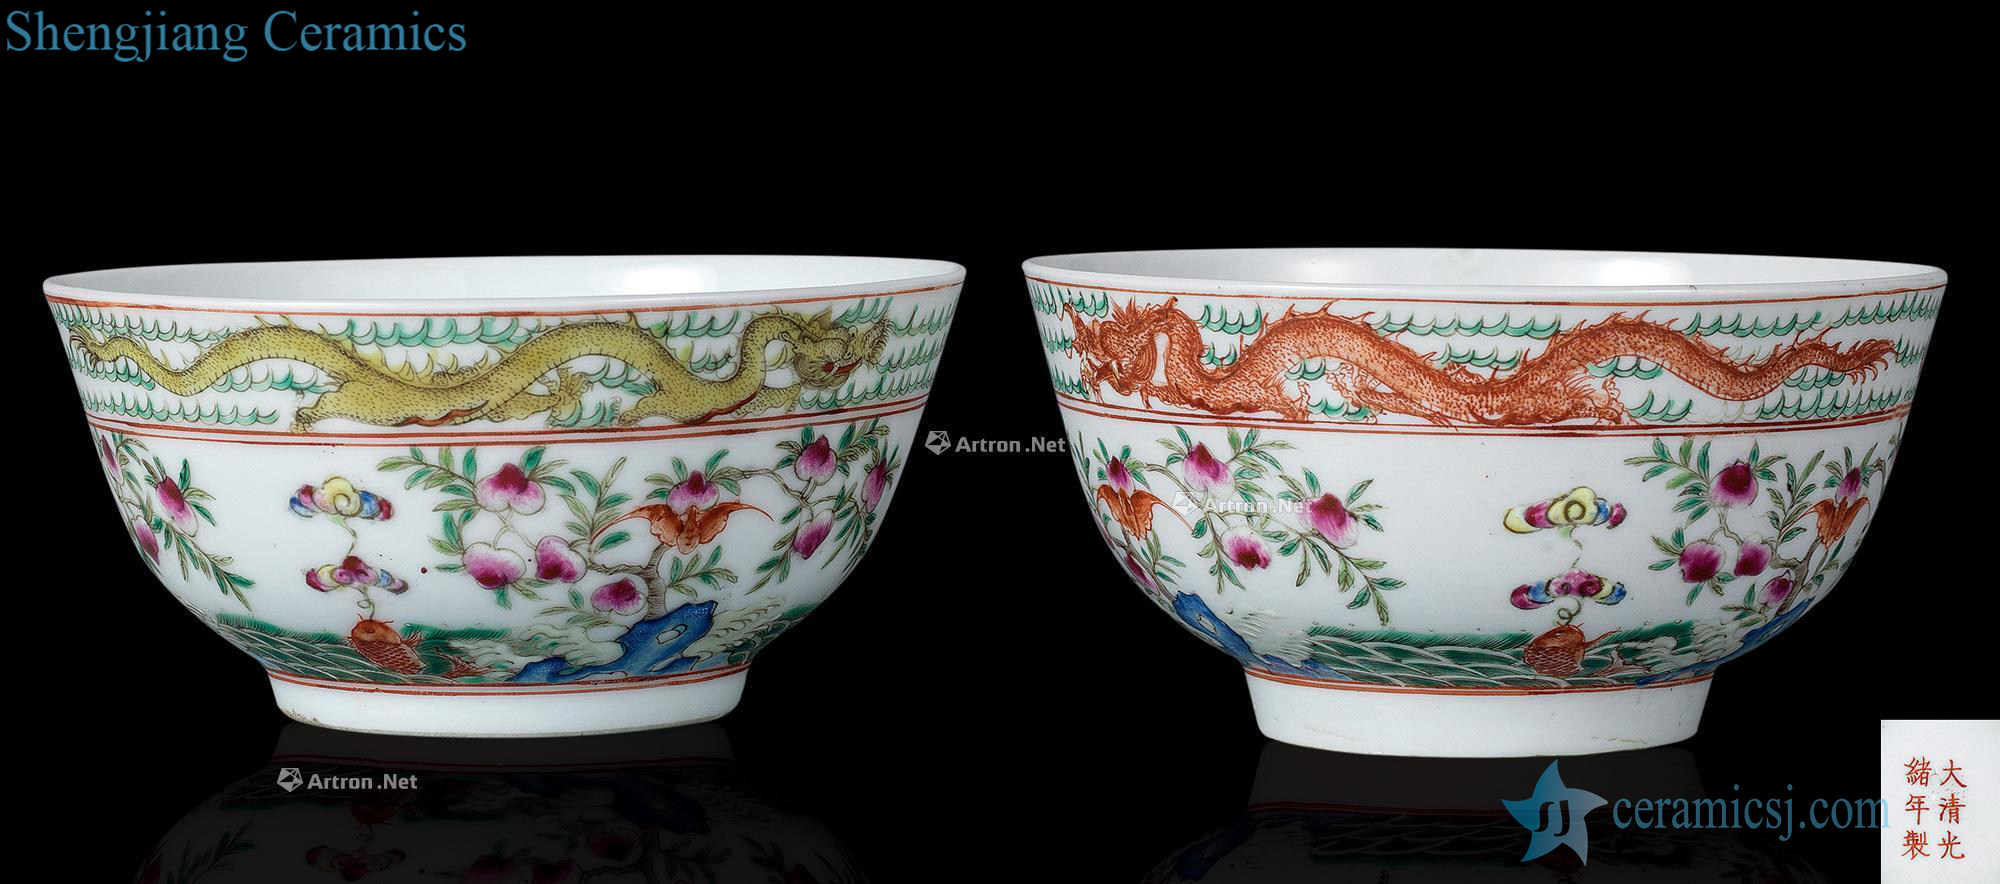 Pastel reign of qing emperor guangxu sanduo dragon bowl (a)